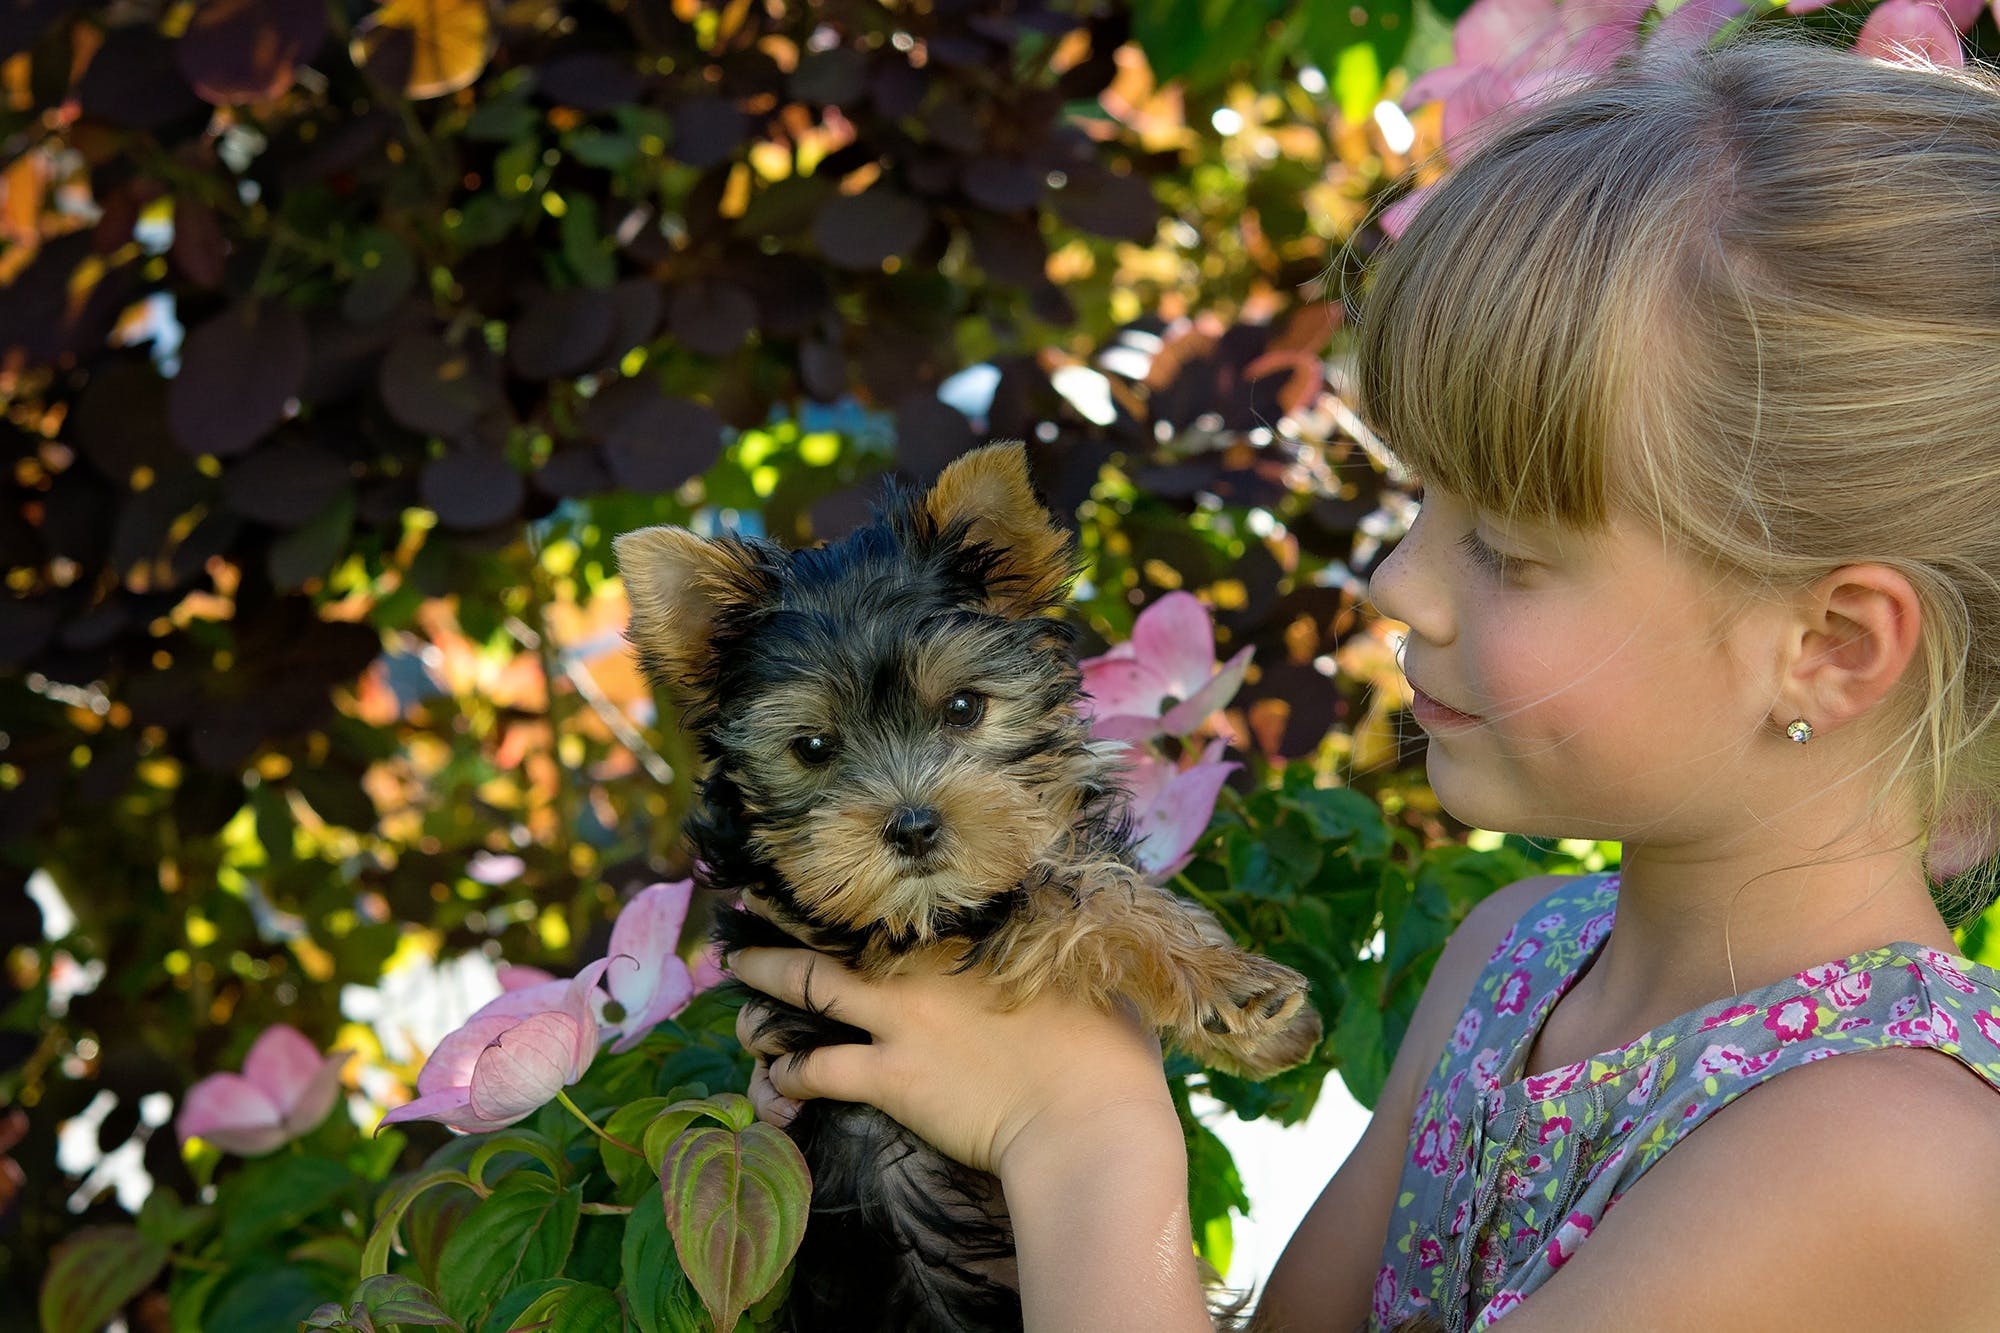 Kleines Mädchen mit Hund